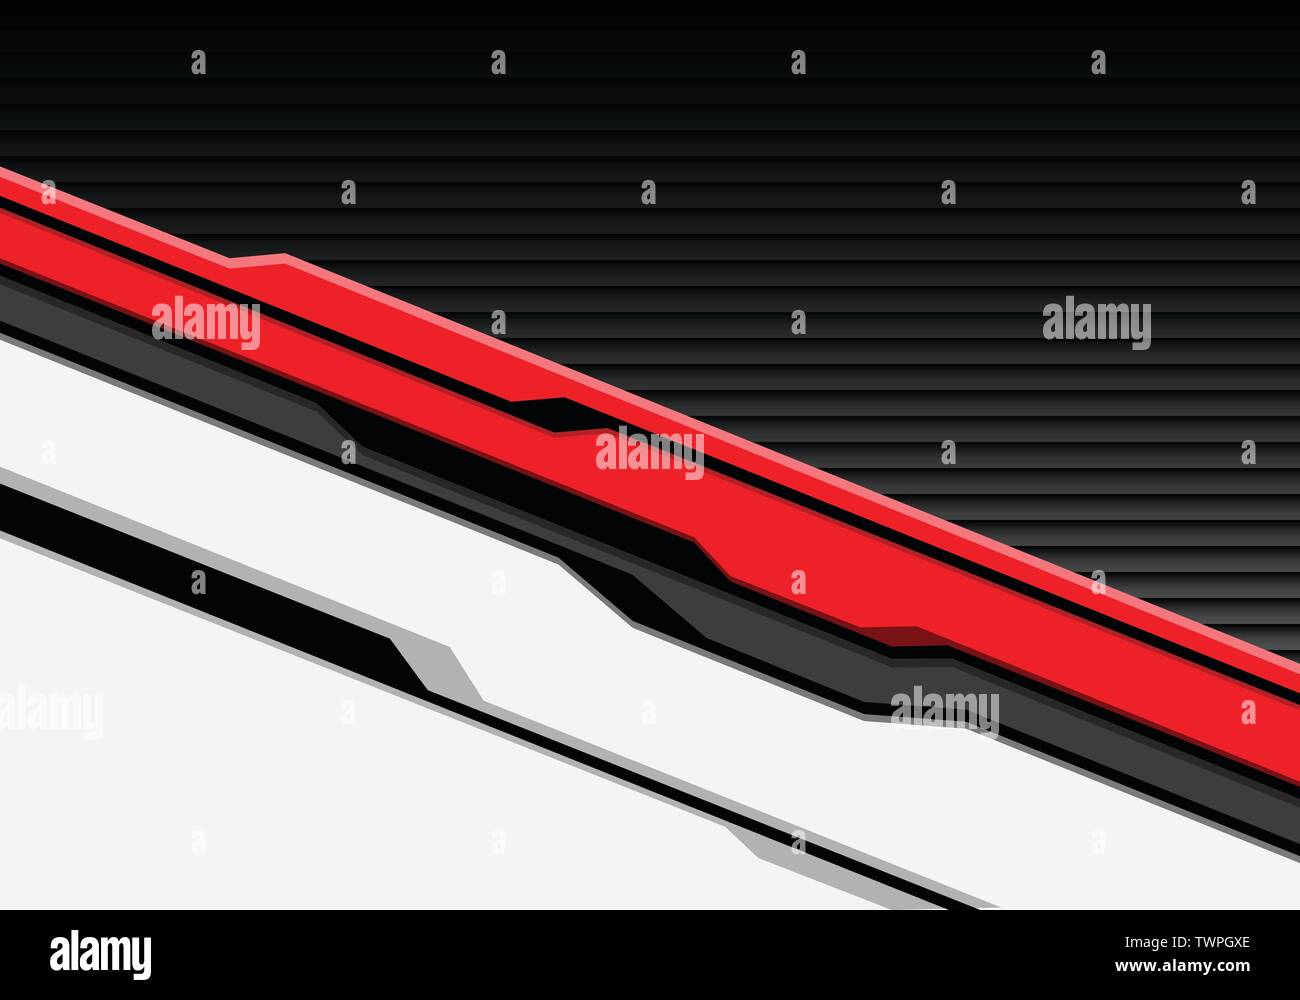 Abstrakte rote weiße Cyber futuristisch mit dunkelgrauem Shutter Muster Design moderne Technologie Hintergrund Vektor Illustration. Stock Vektor